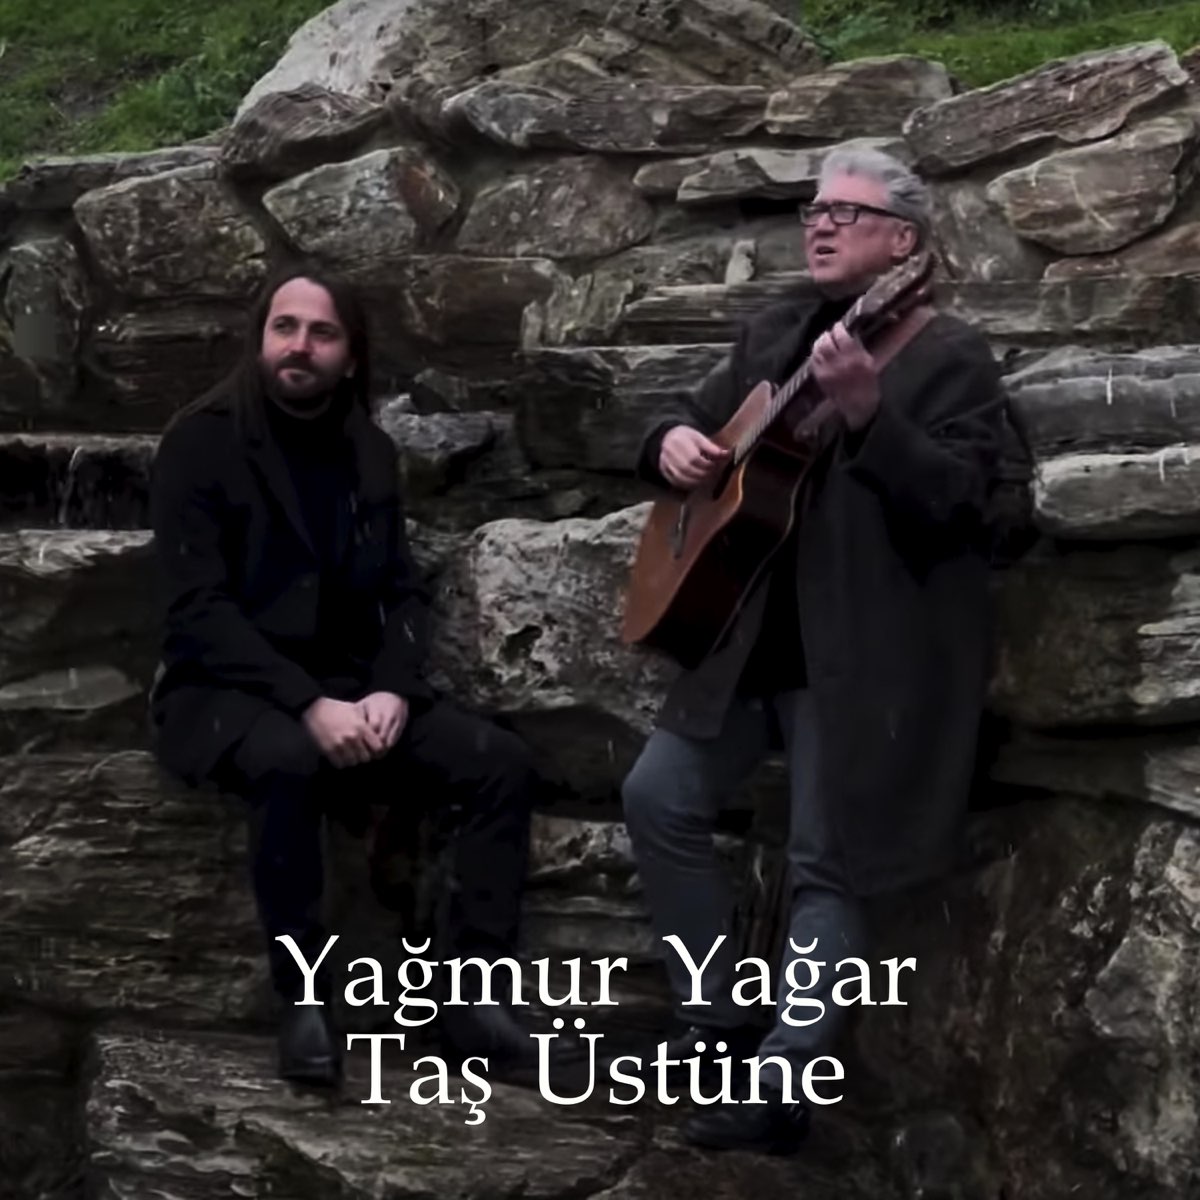 Yağmur Yağar Taş Üstüne - Single - Album by Paul Dwyer & Niyazi Koyuncu -  Apple Music